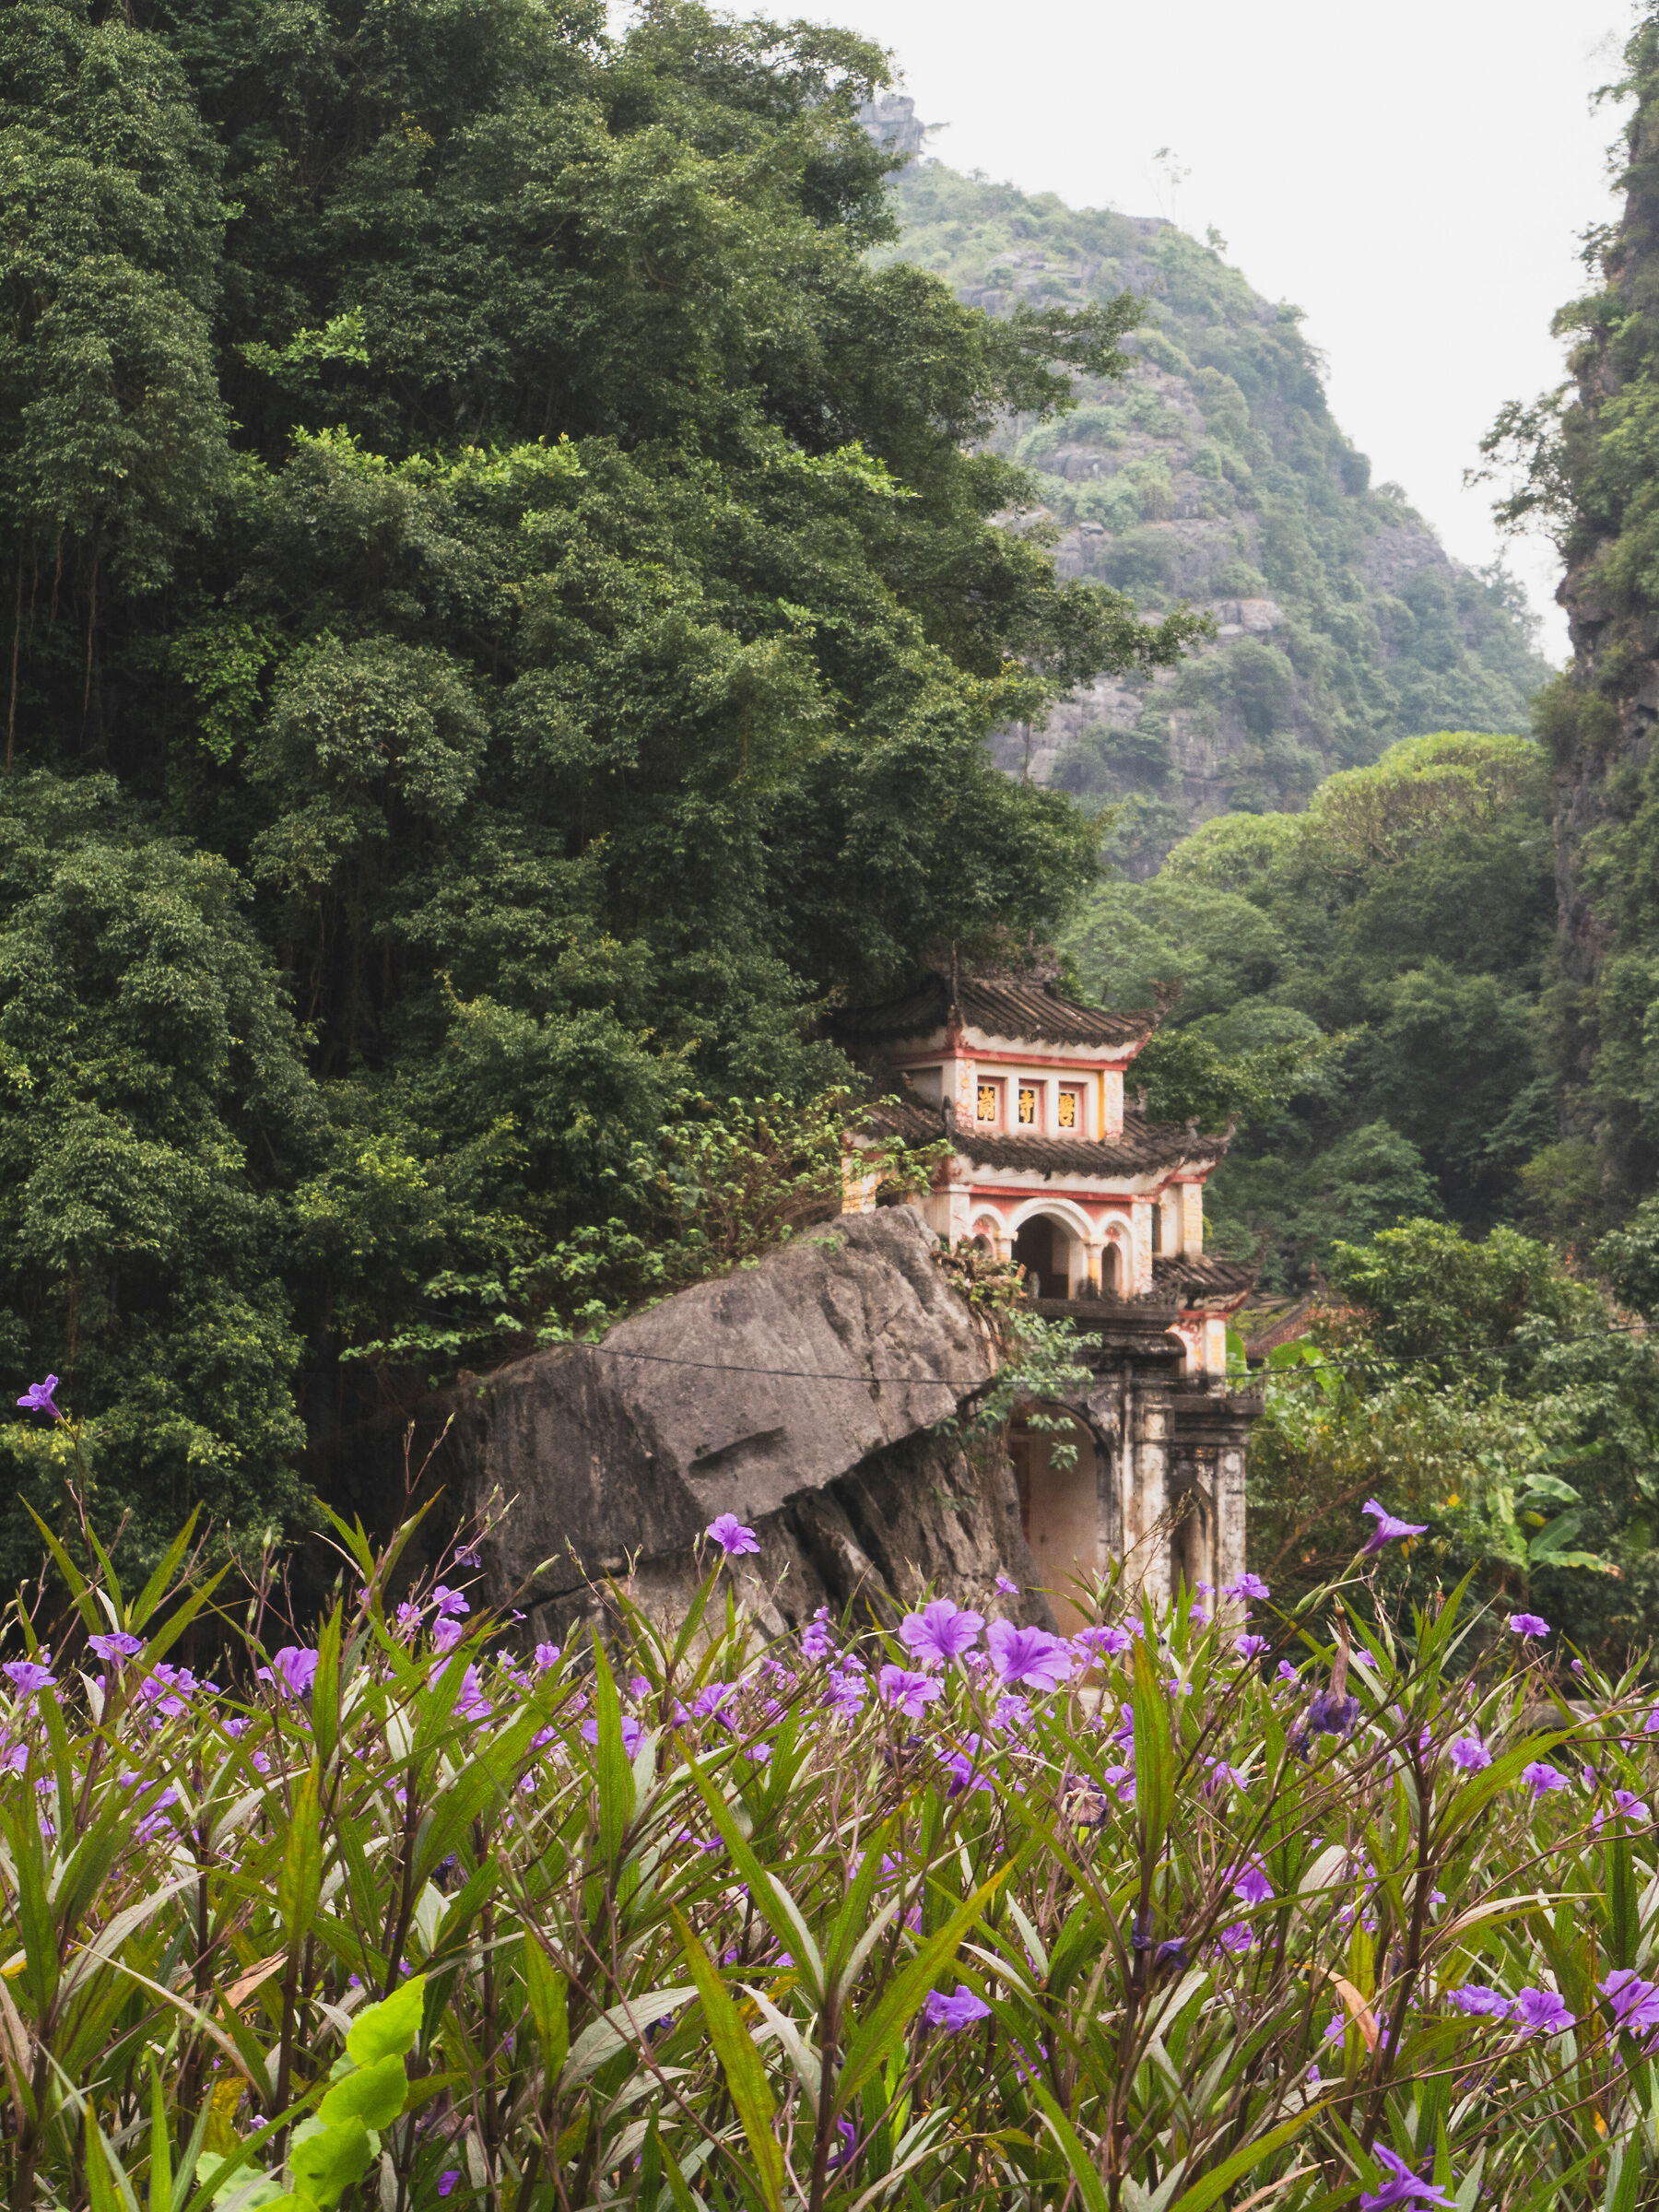 Bich Bing Pagoda, in an enchanted setting ...